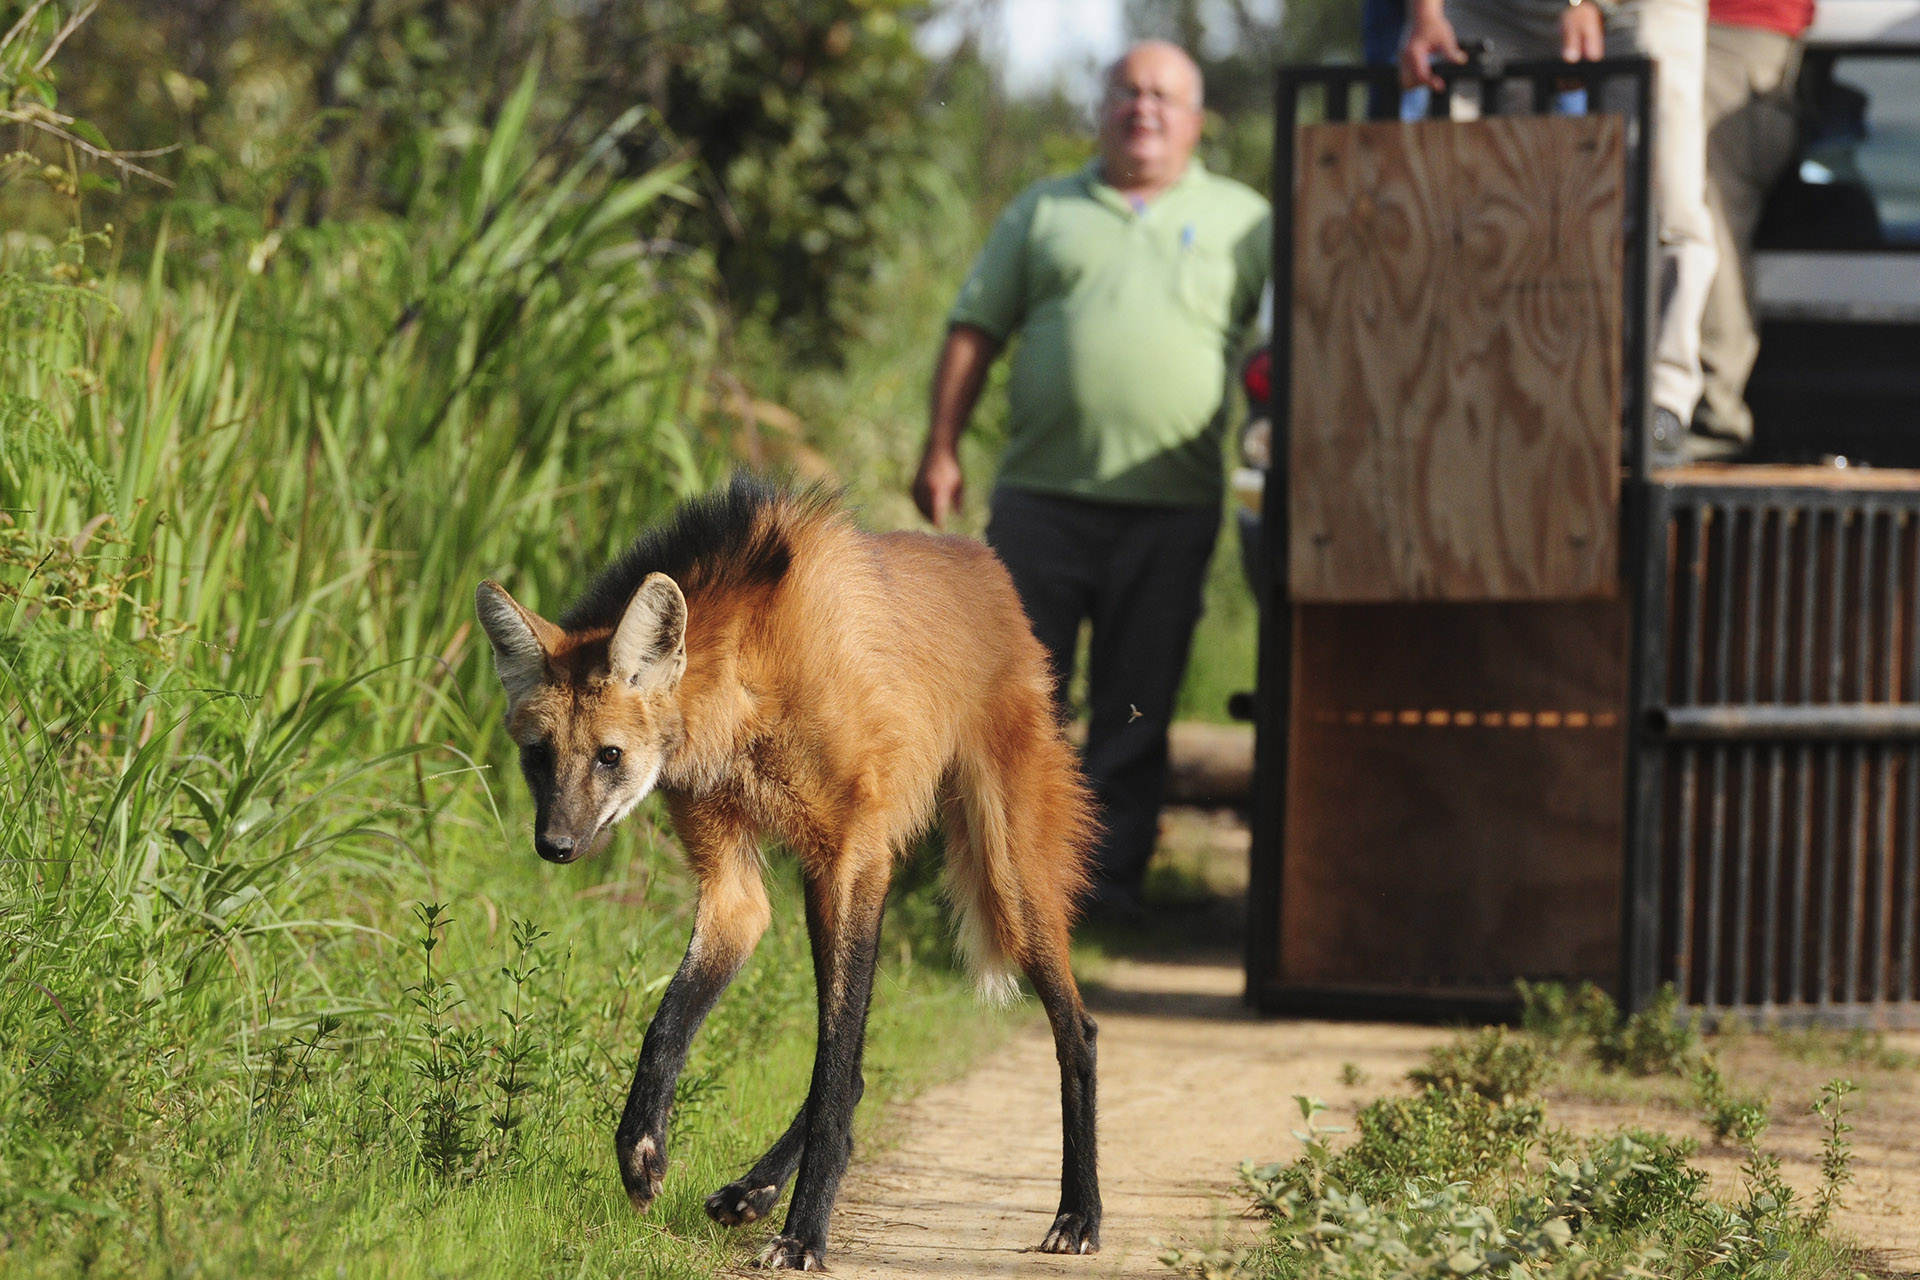 A Fundação Jardim Zoológico de Brasília participou na tarde desta sexta-feira (16) da soltura de uma loba-guará, com suspeita de atropelamento.